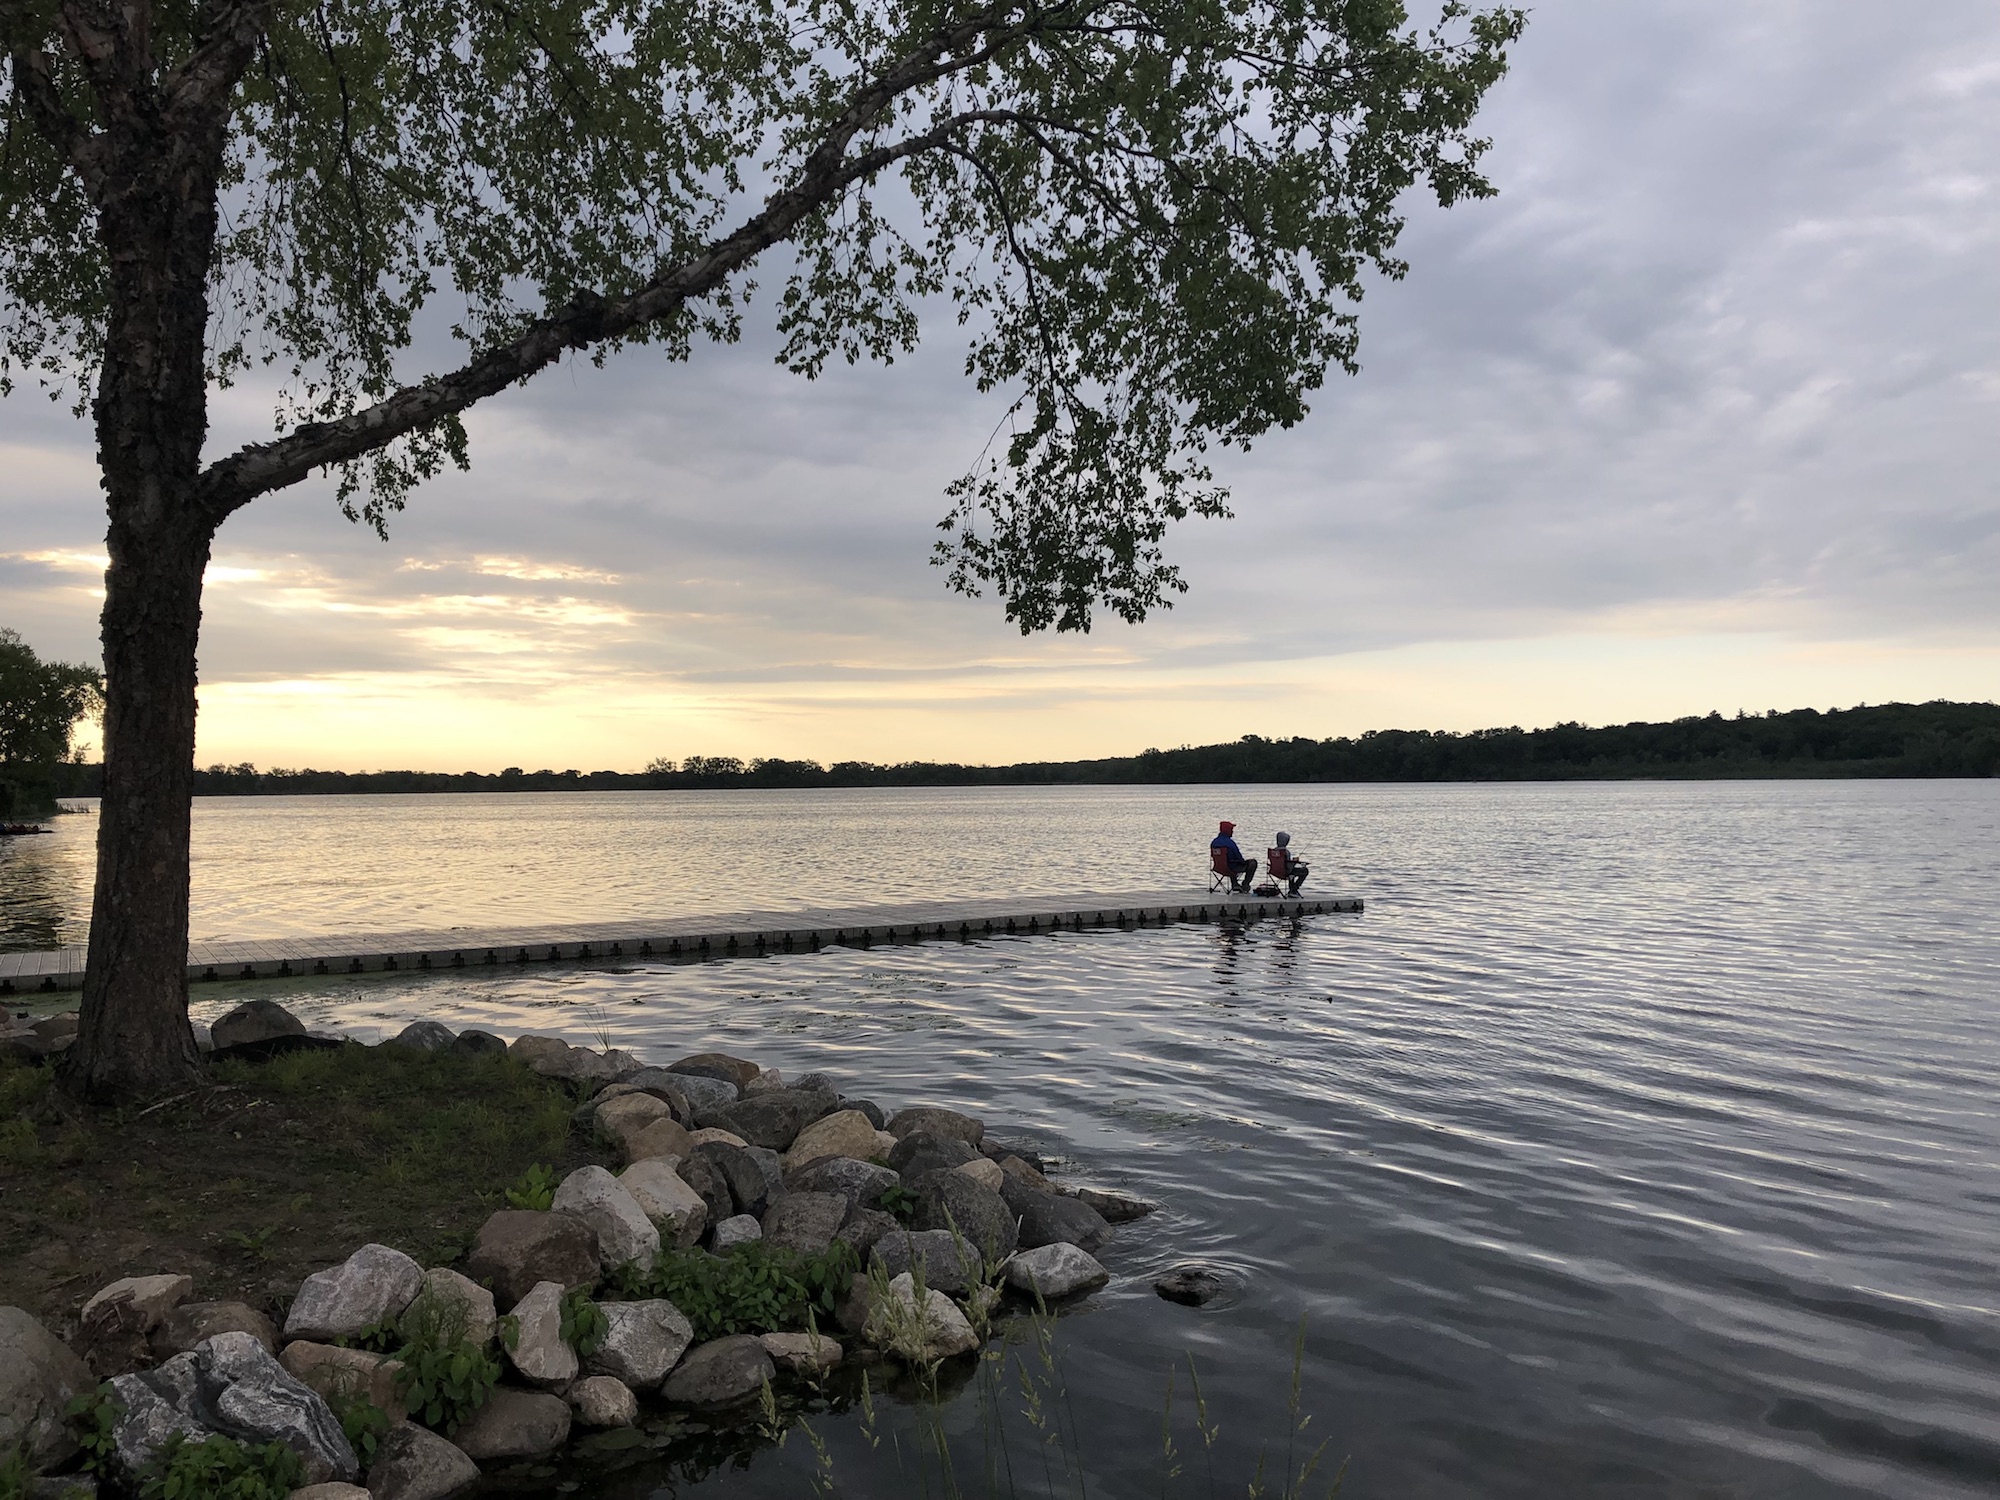 Lake Wingra on June 14, 2019.